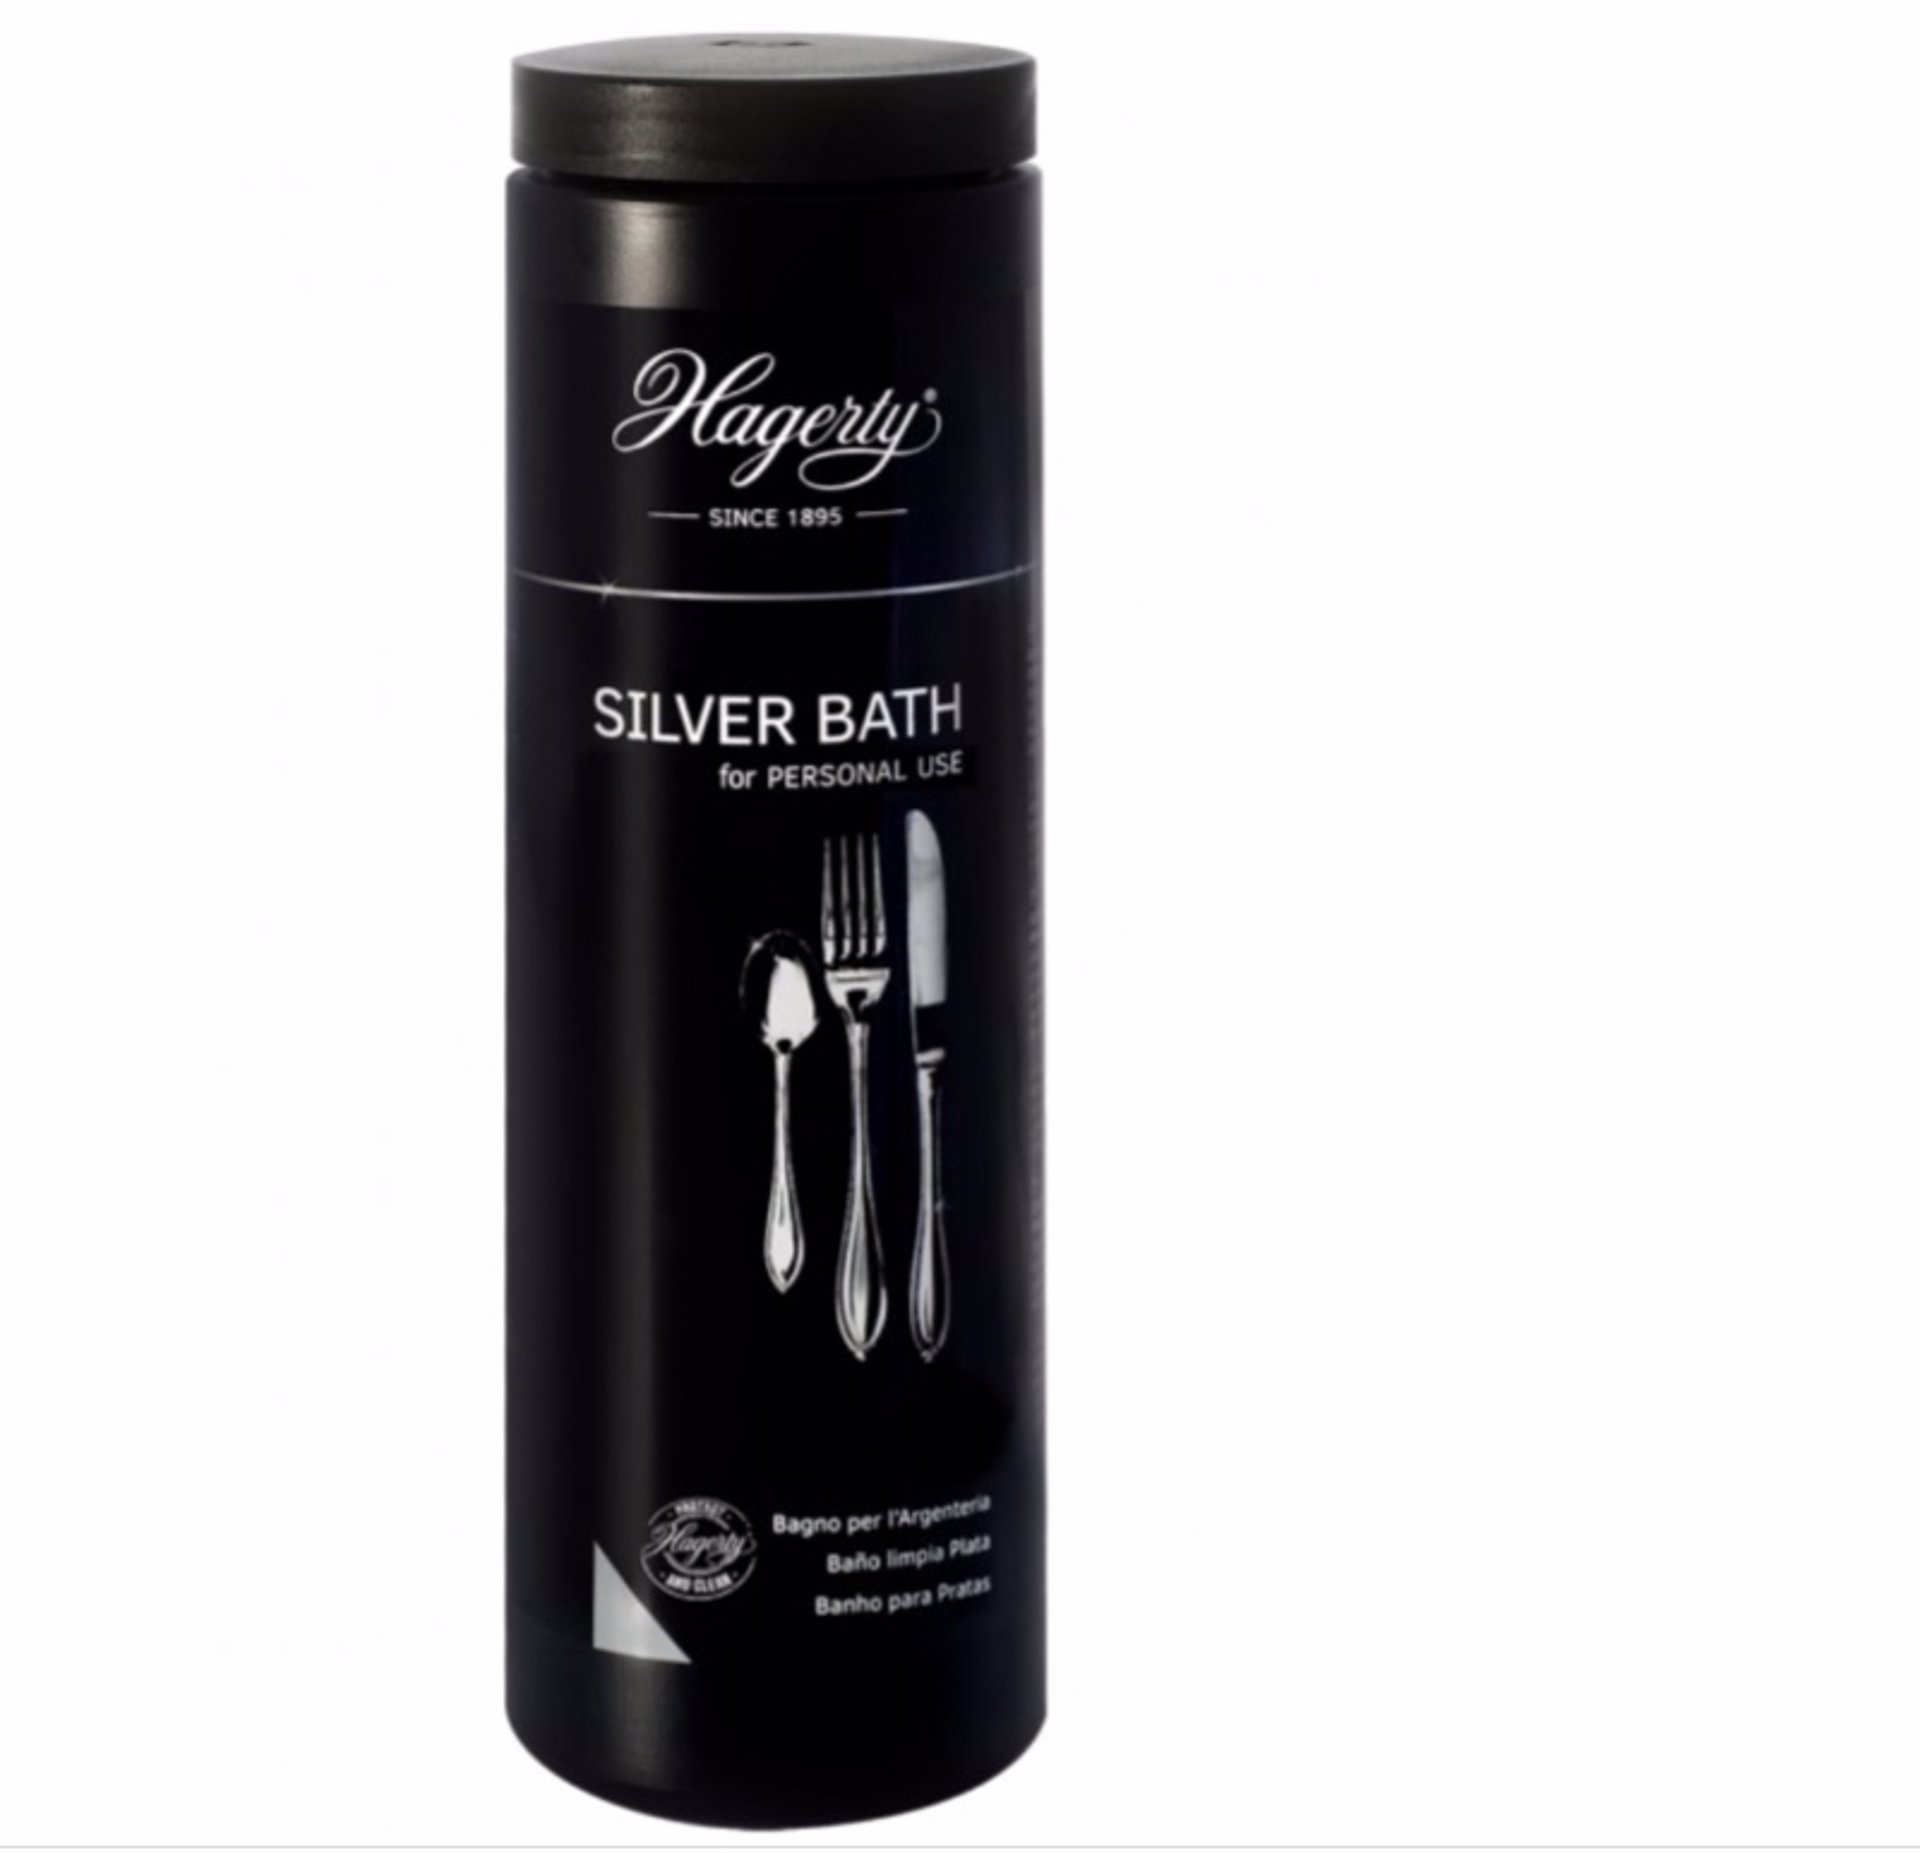 Hagerty Silver Cloth - Gamuza Impregnada Limpia Joyas De Plata Y